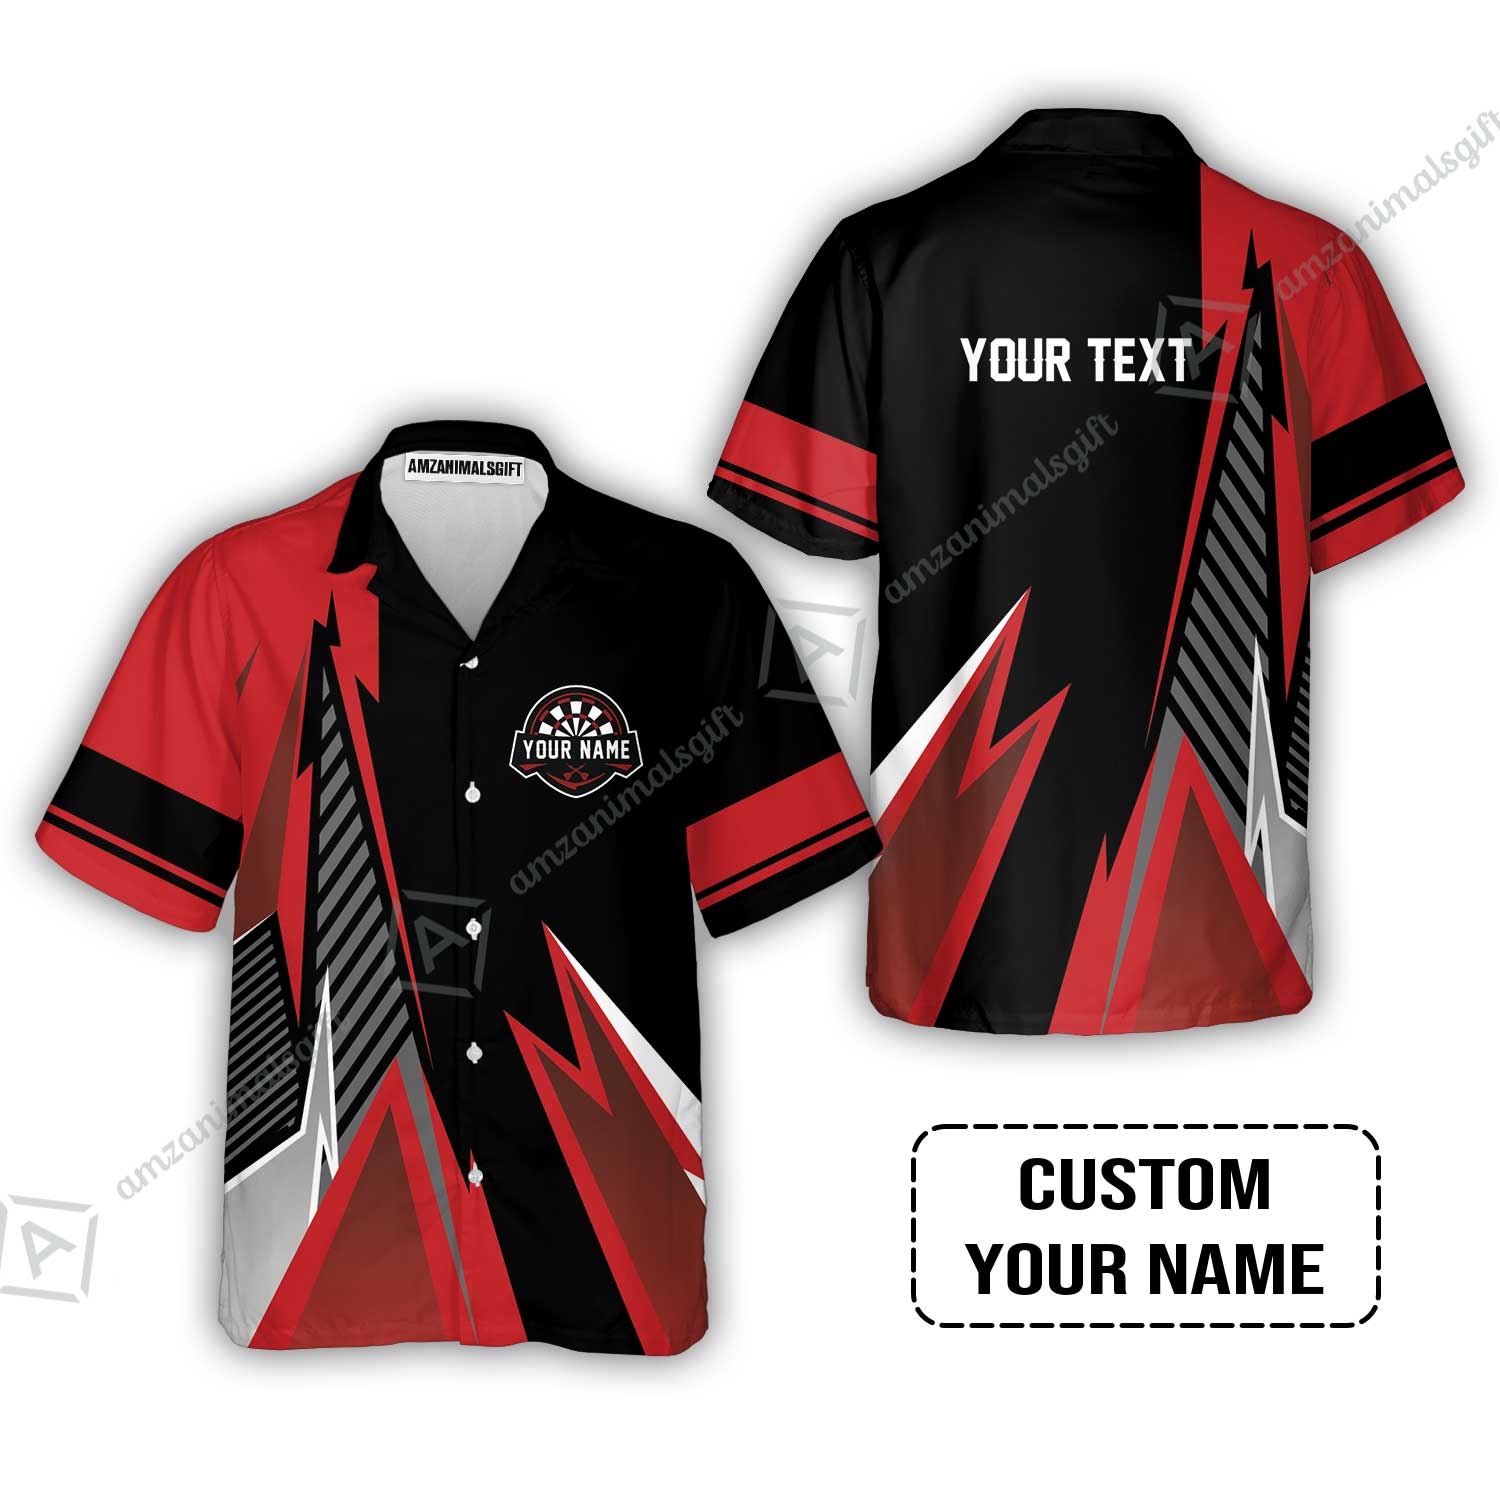 Customized Name & Text Darts Hawaiian Shirt, Personalized Name Darts Hawaiian Shirt